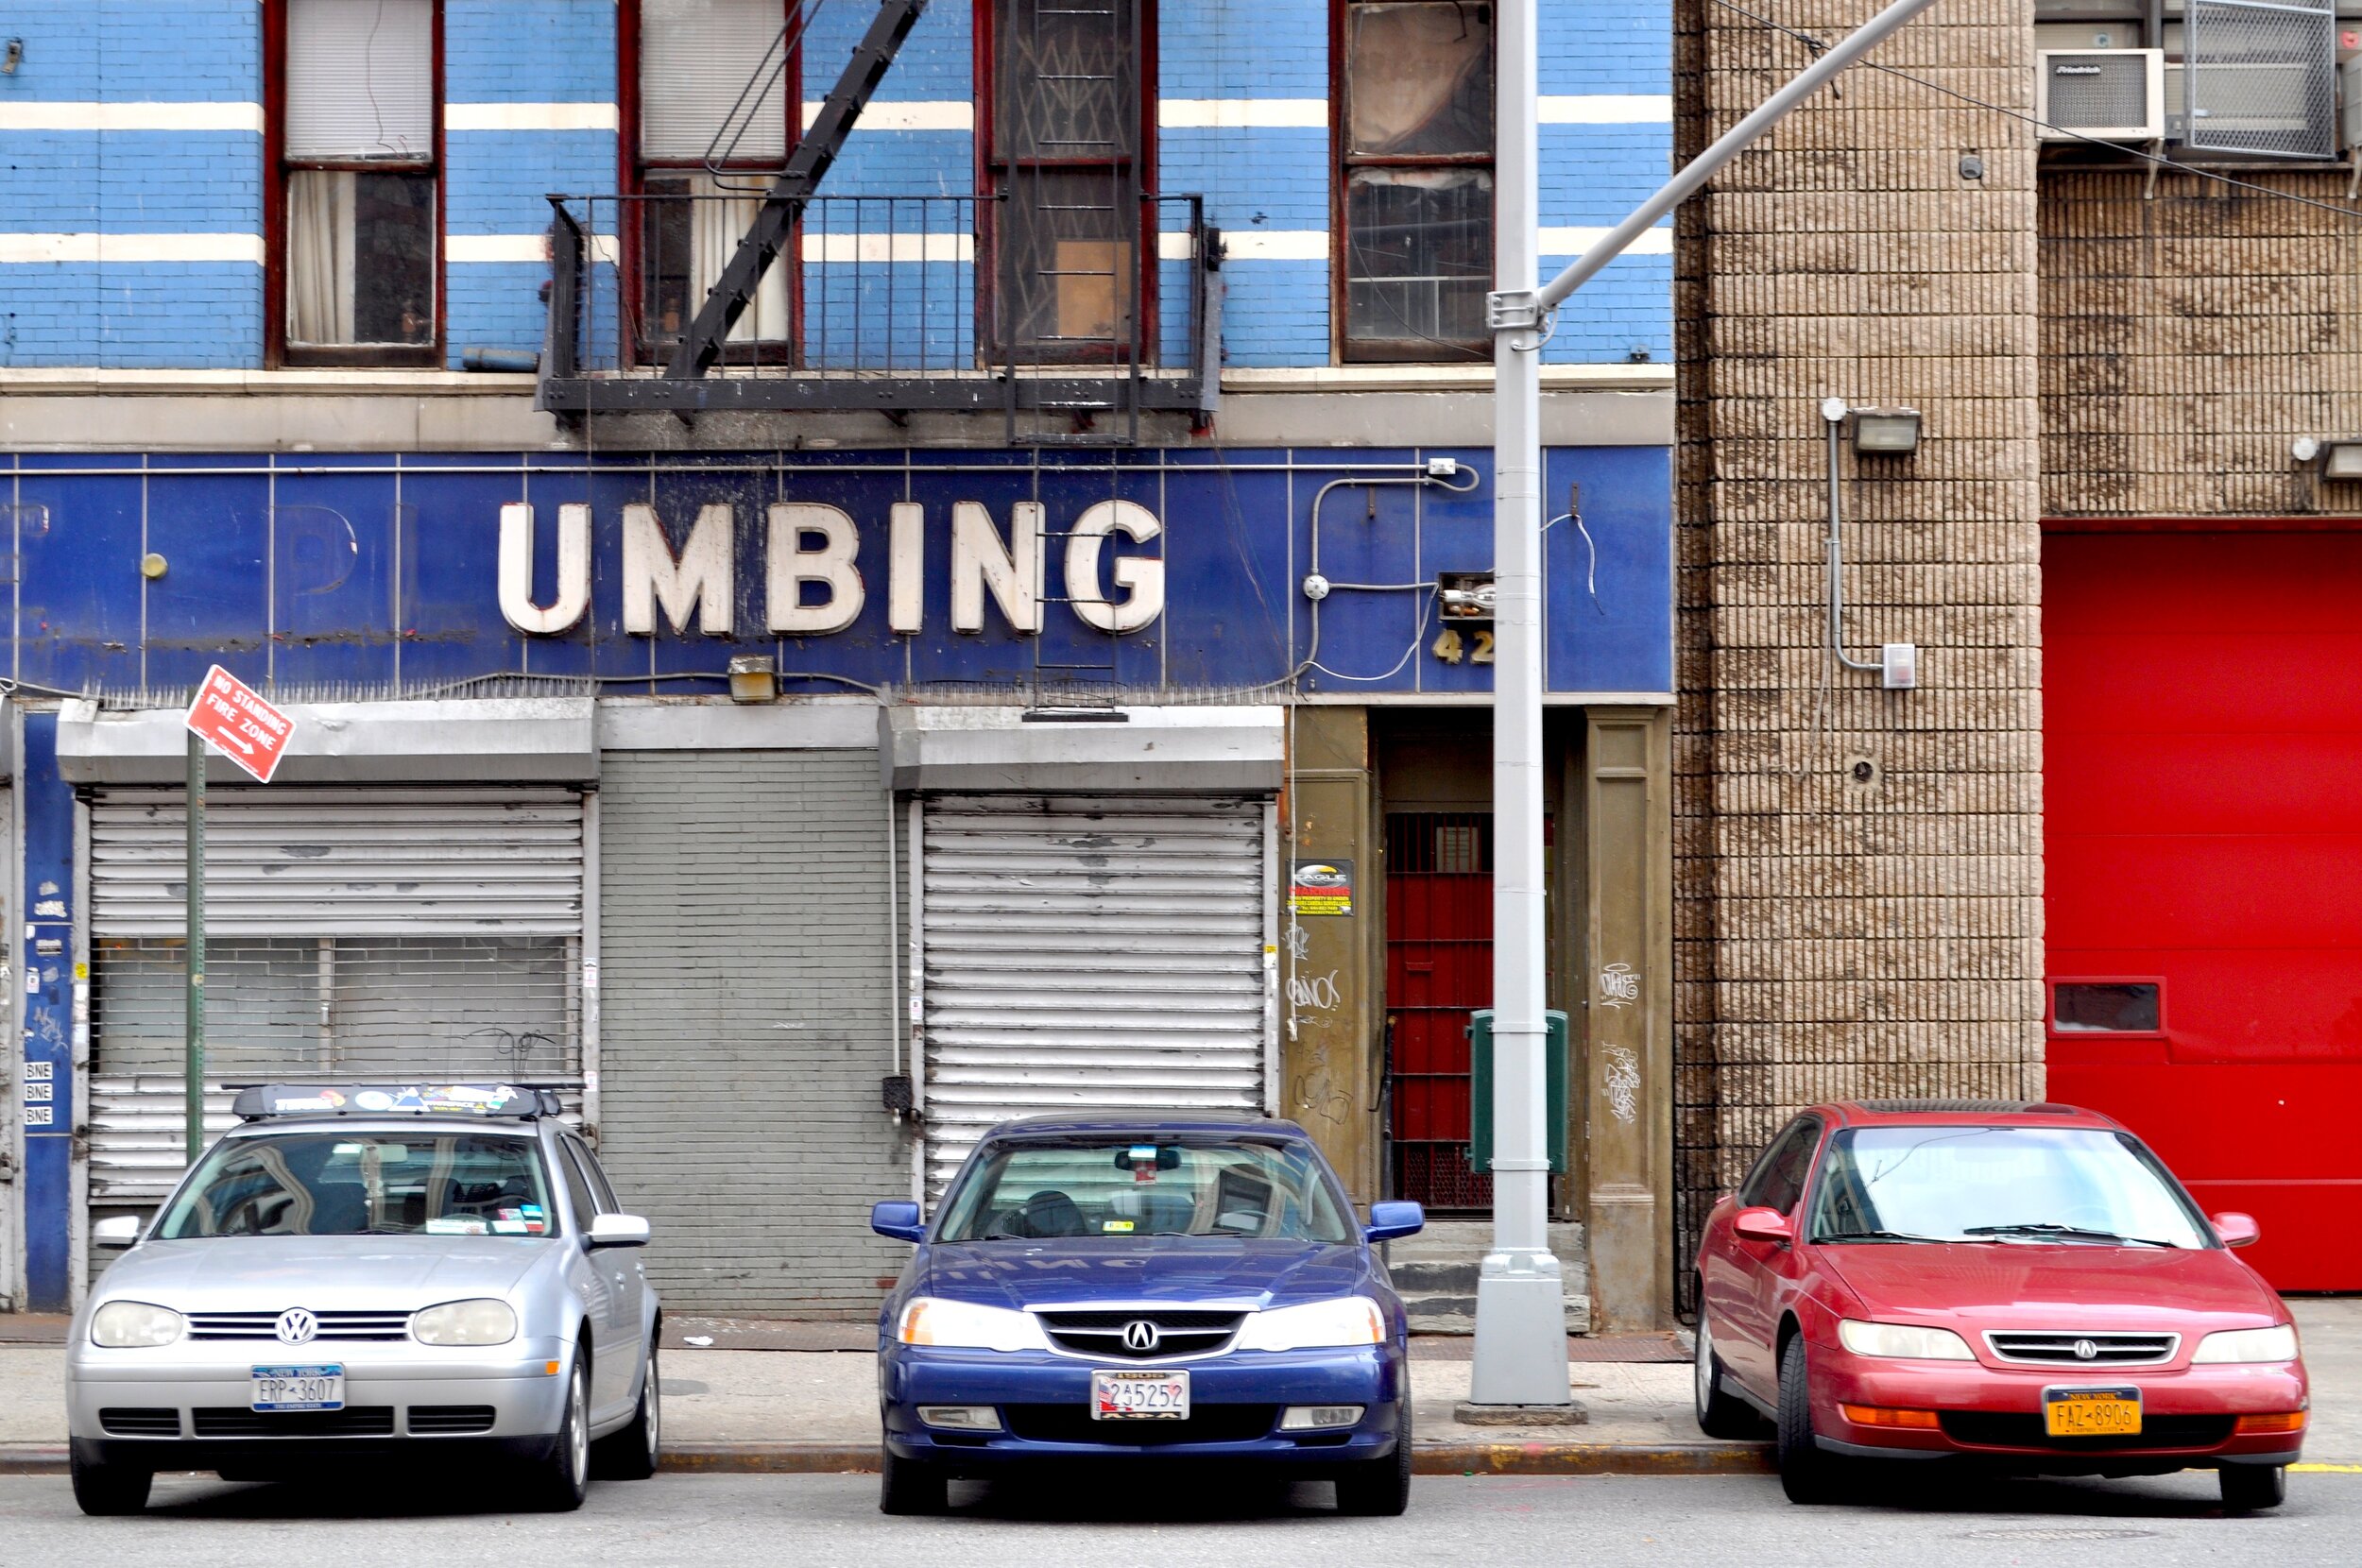 Umbing - Manhattan, New York (2012)